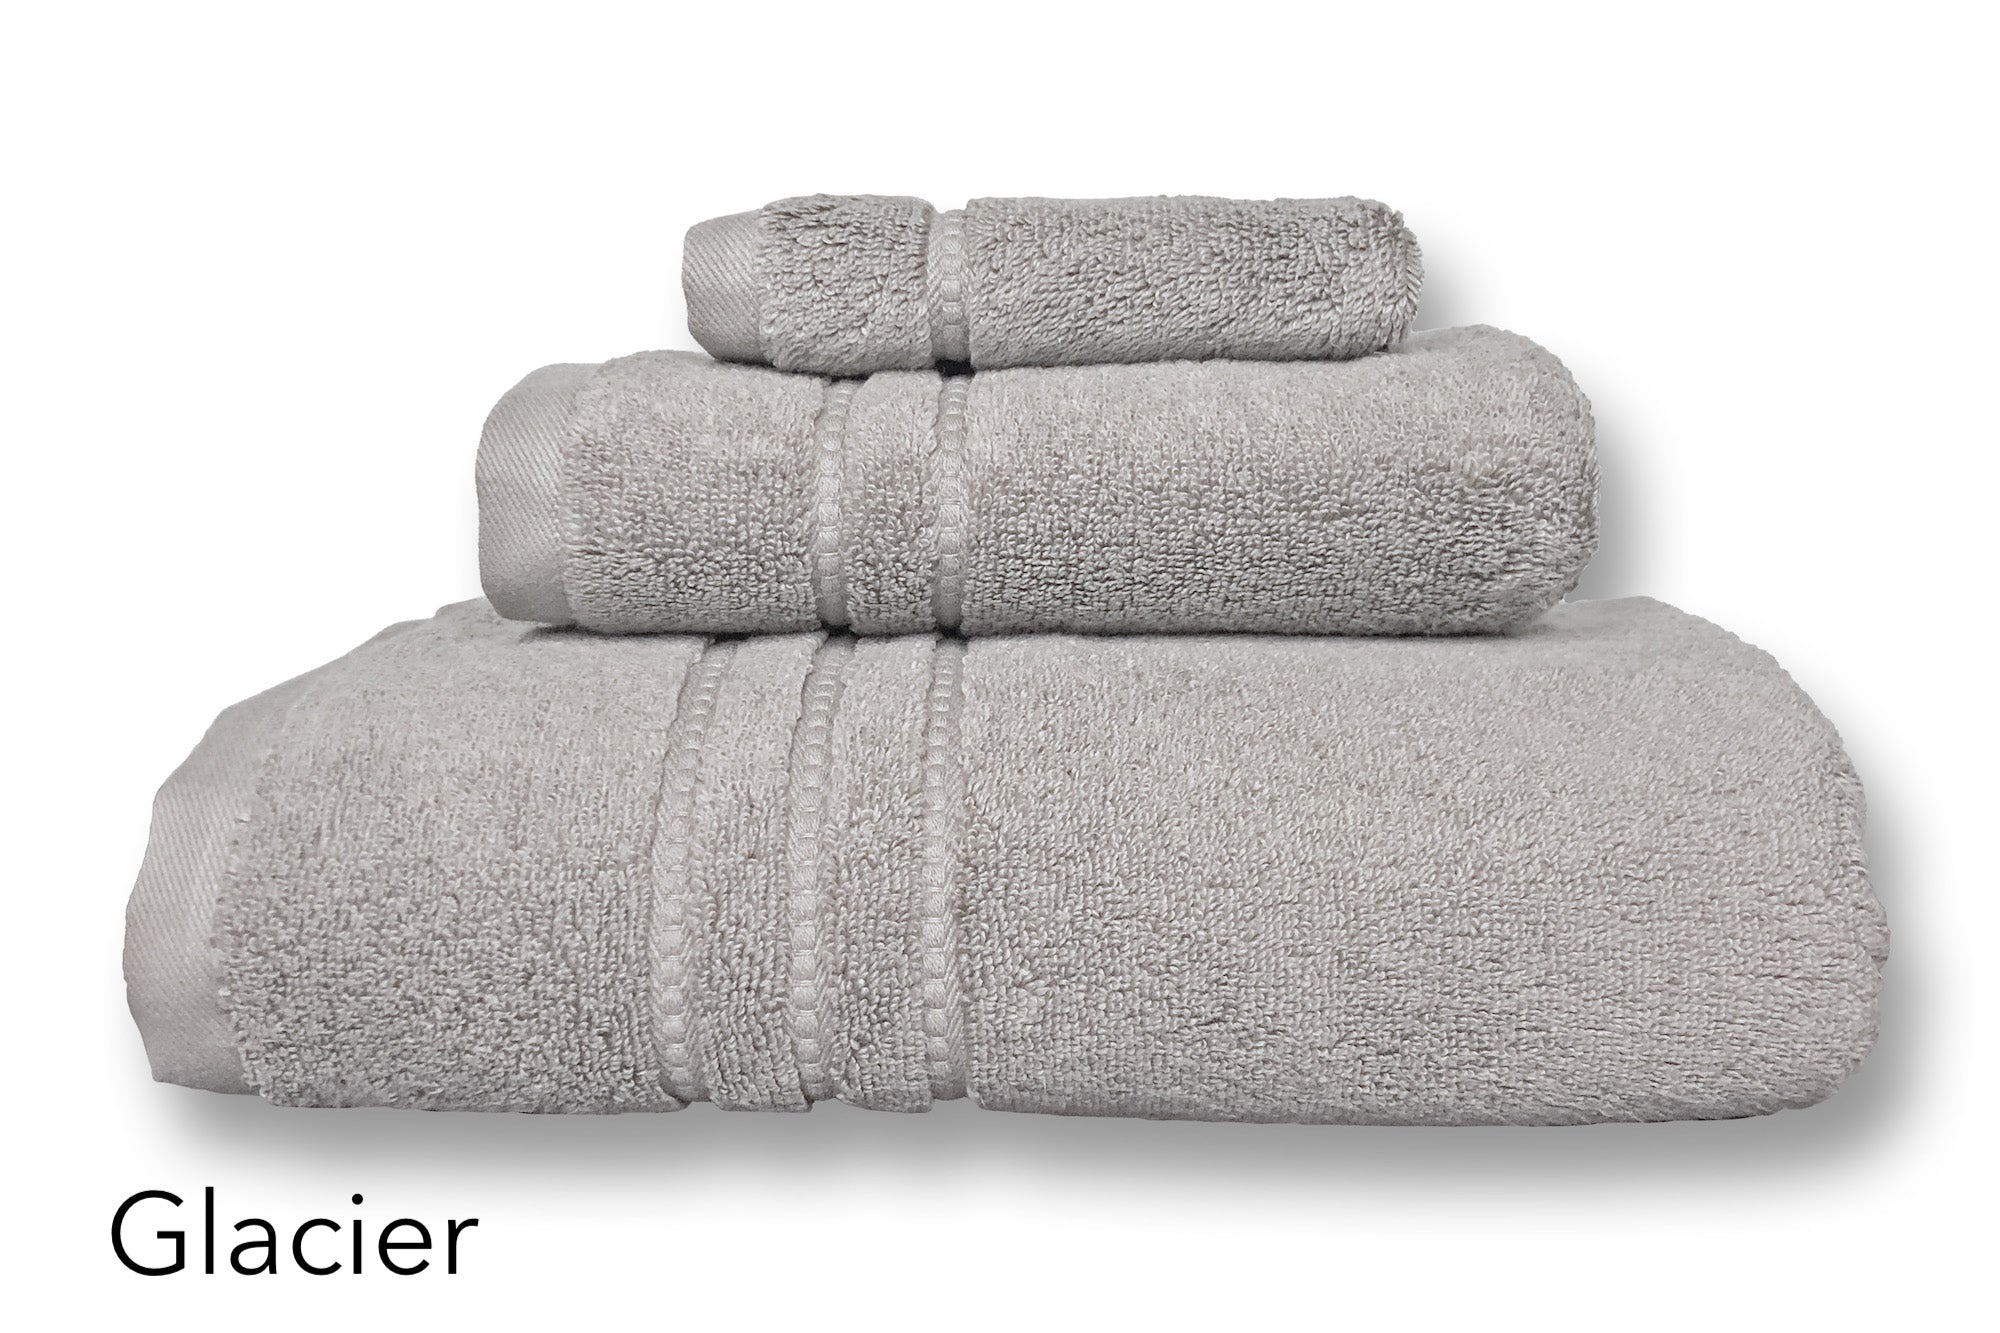 Buy glacier Portofino Micro-Cotton Towels